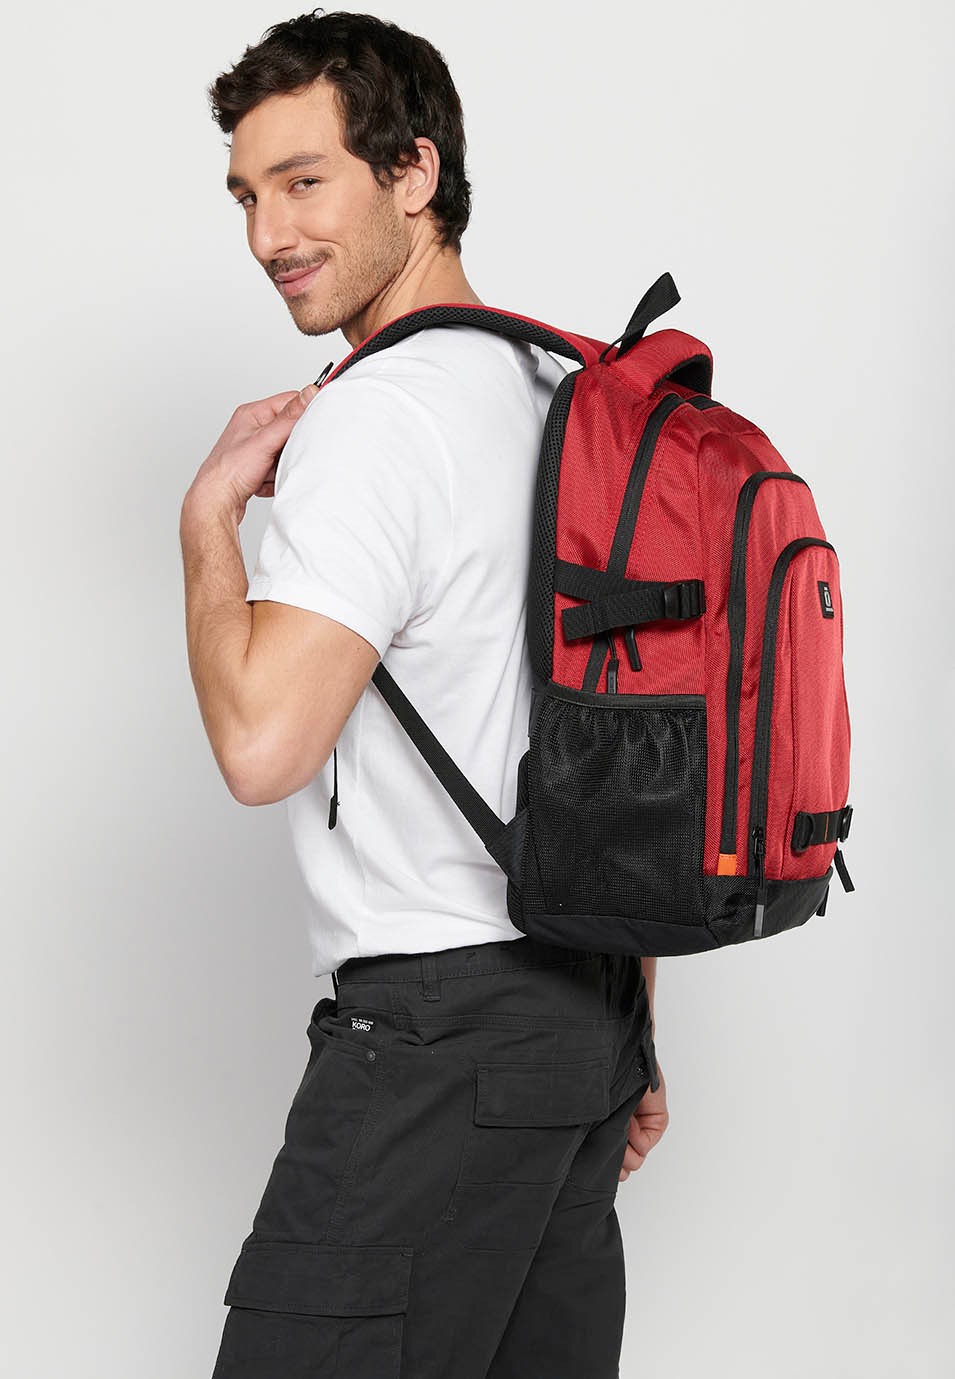 Koröshi-Rucksack mit drei Reißverschlussfächern, eines für Laptop, mit roten Innentaschen 7